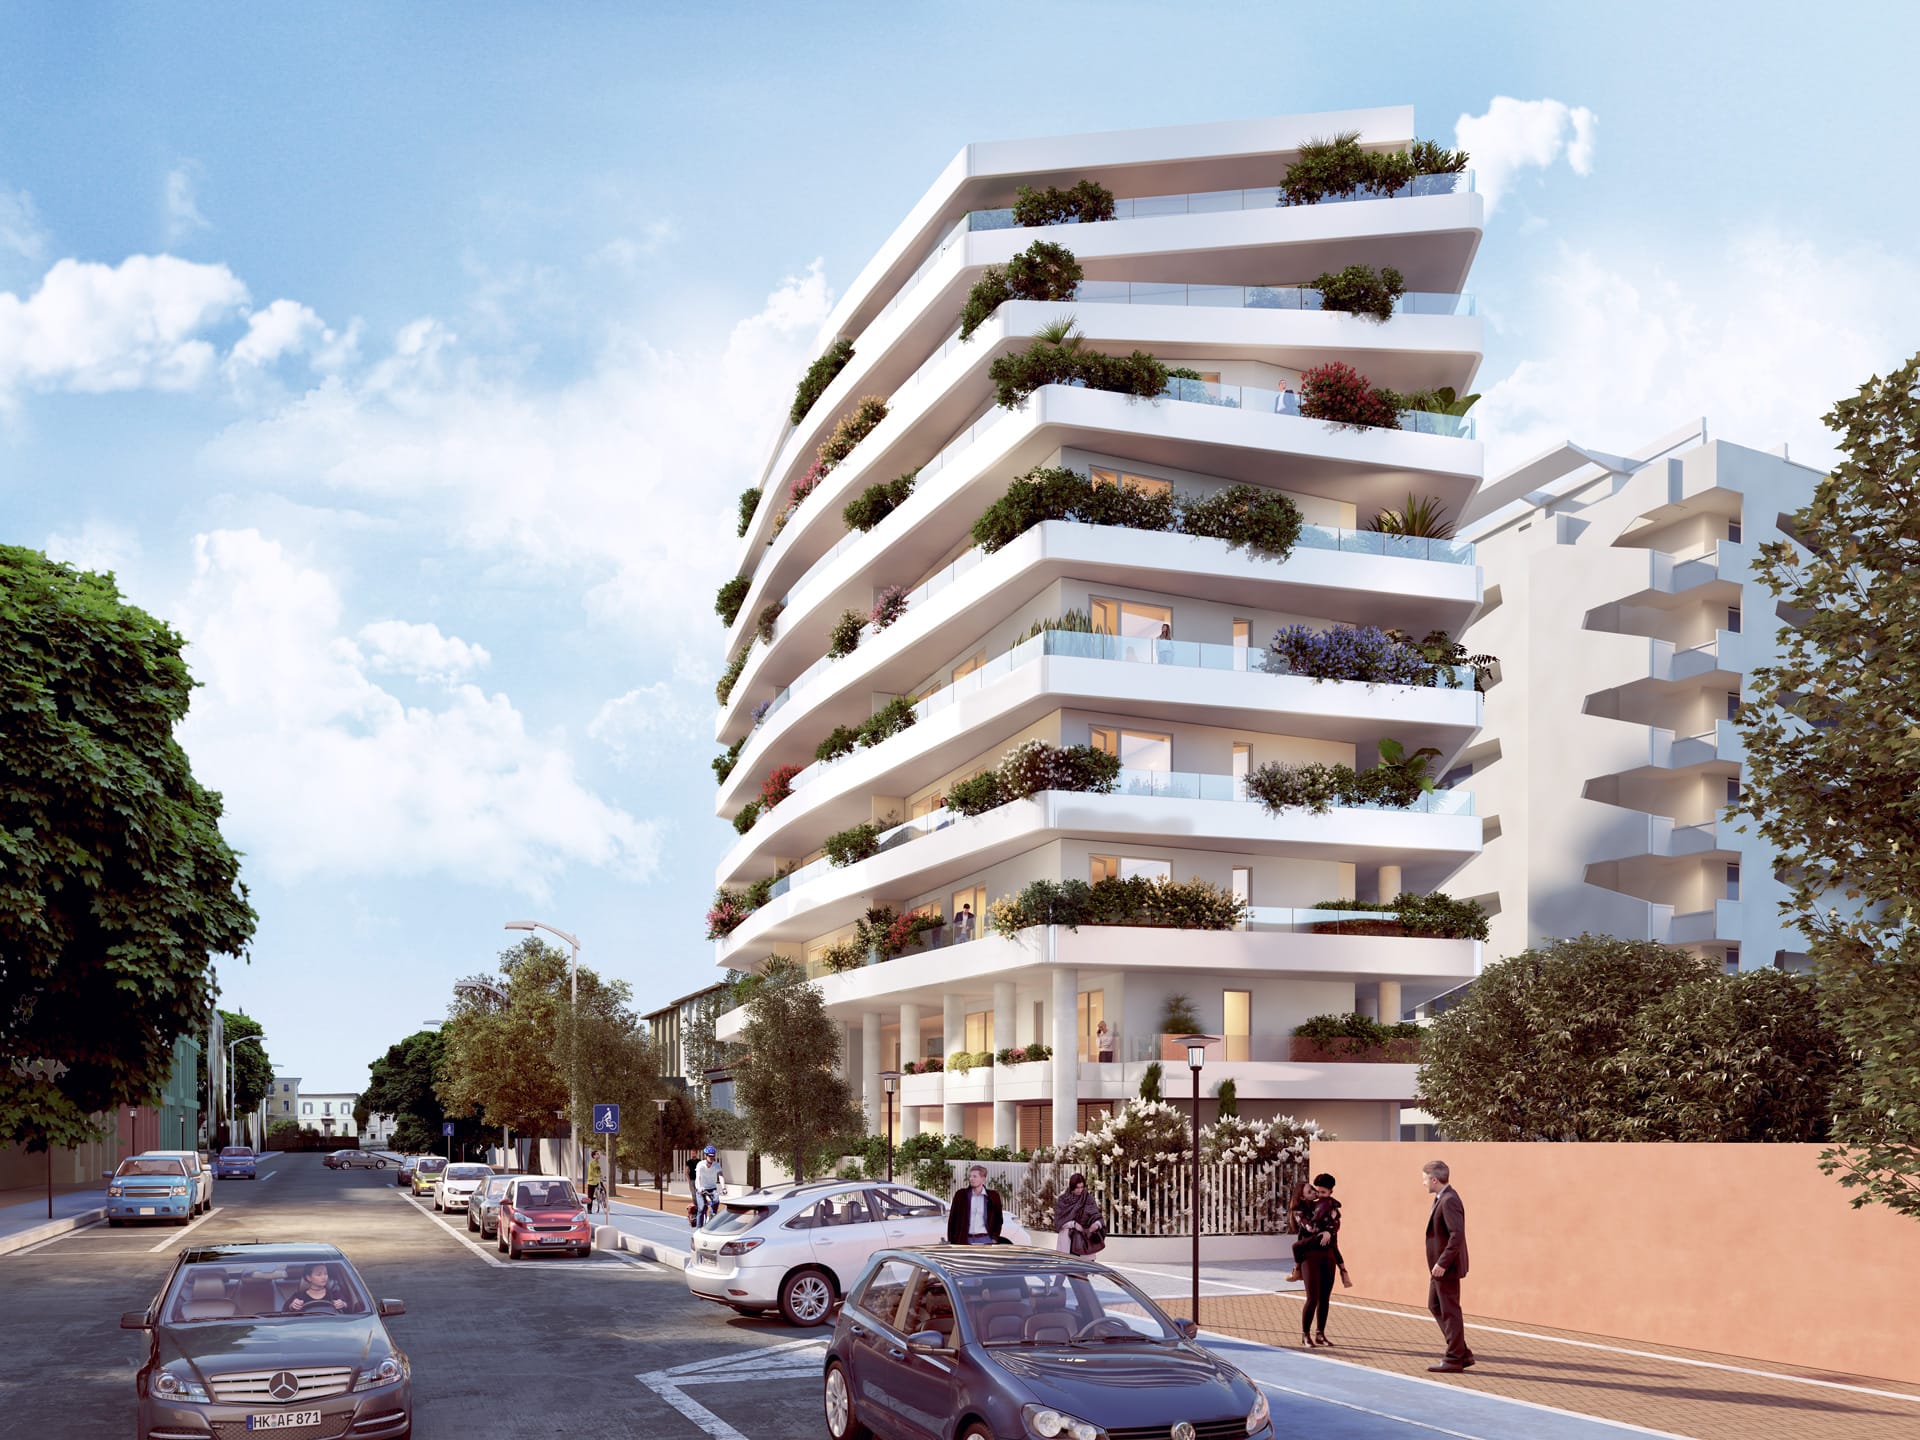 Vendita appartamenti in nuove residenze Pesaro - Zona mare (CA03)